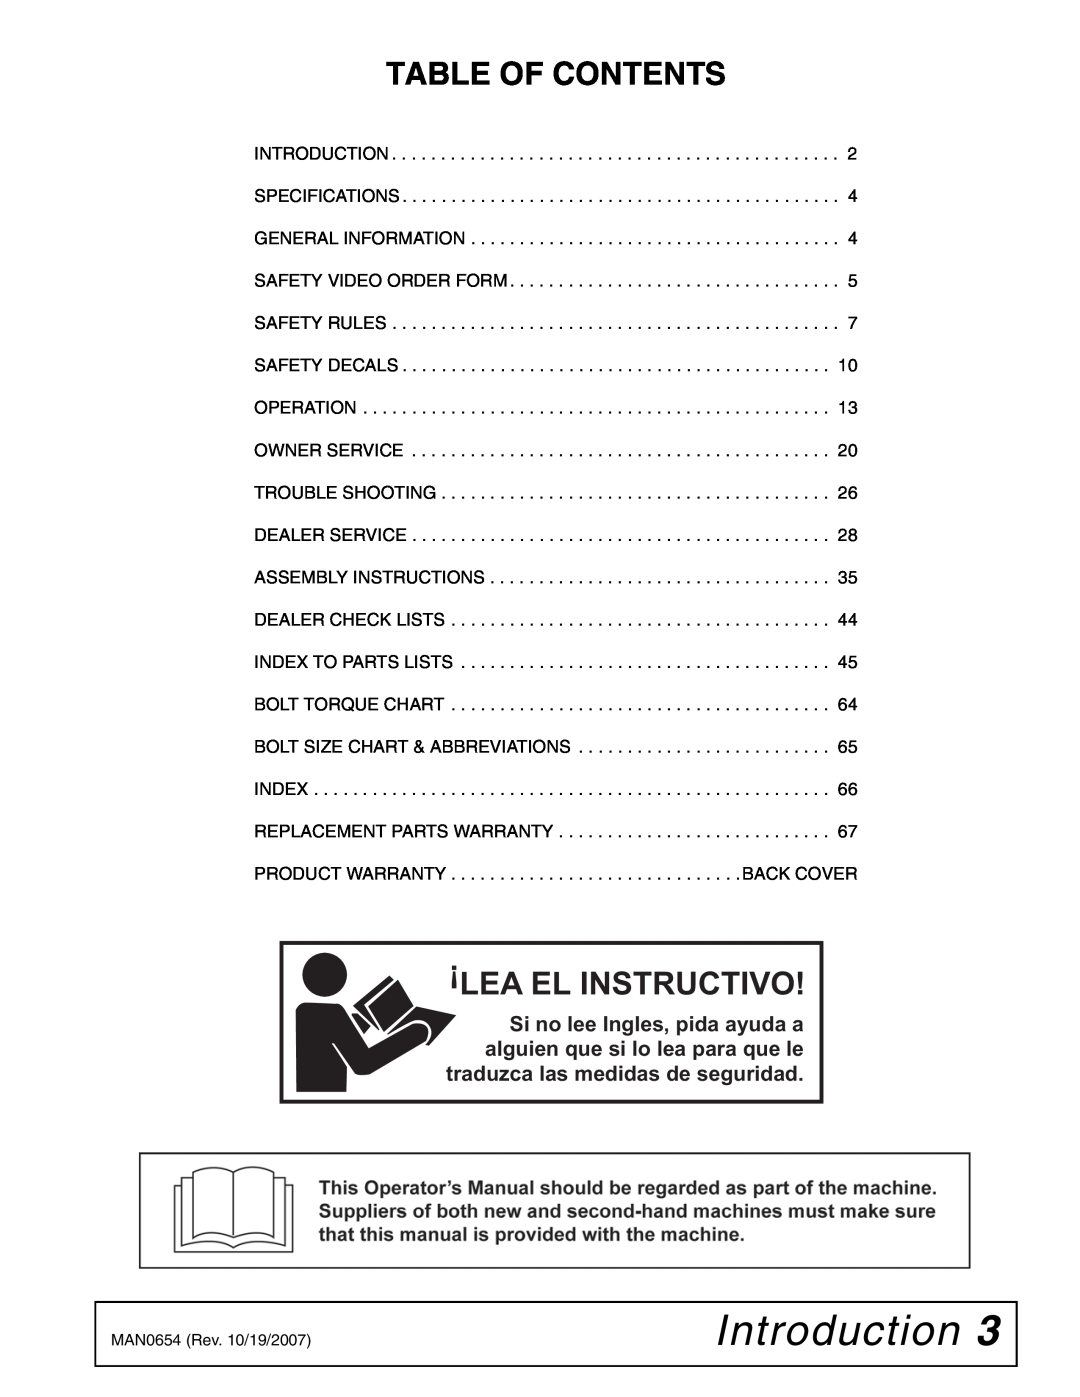 Woods Equipment BB720X, BB600X, BB840XP manual Introduction, Table Of Contents, Lea El Instructivo 